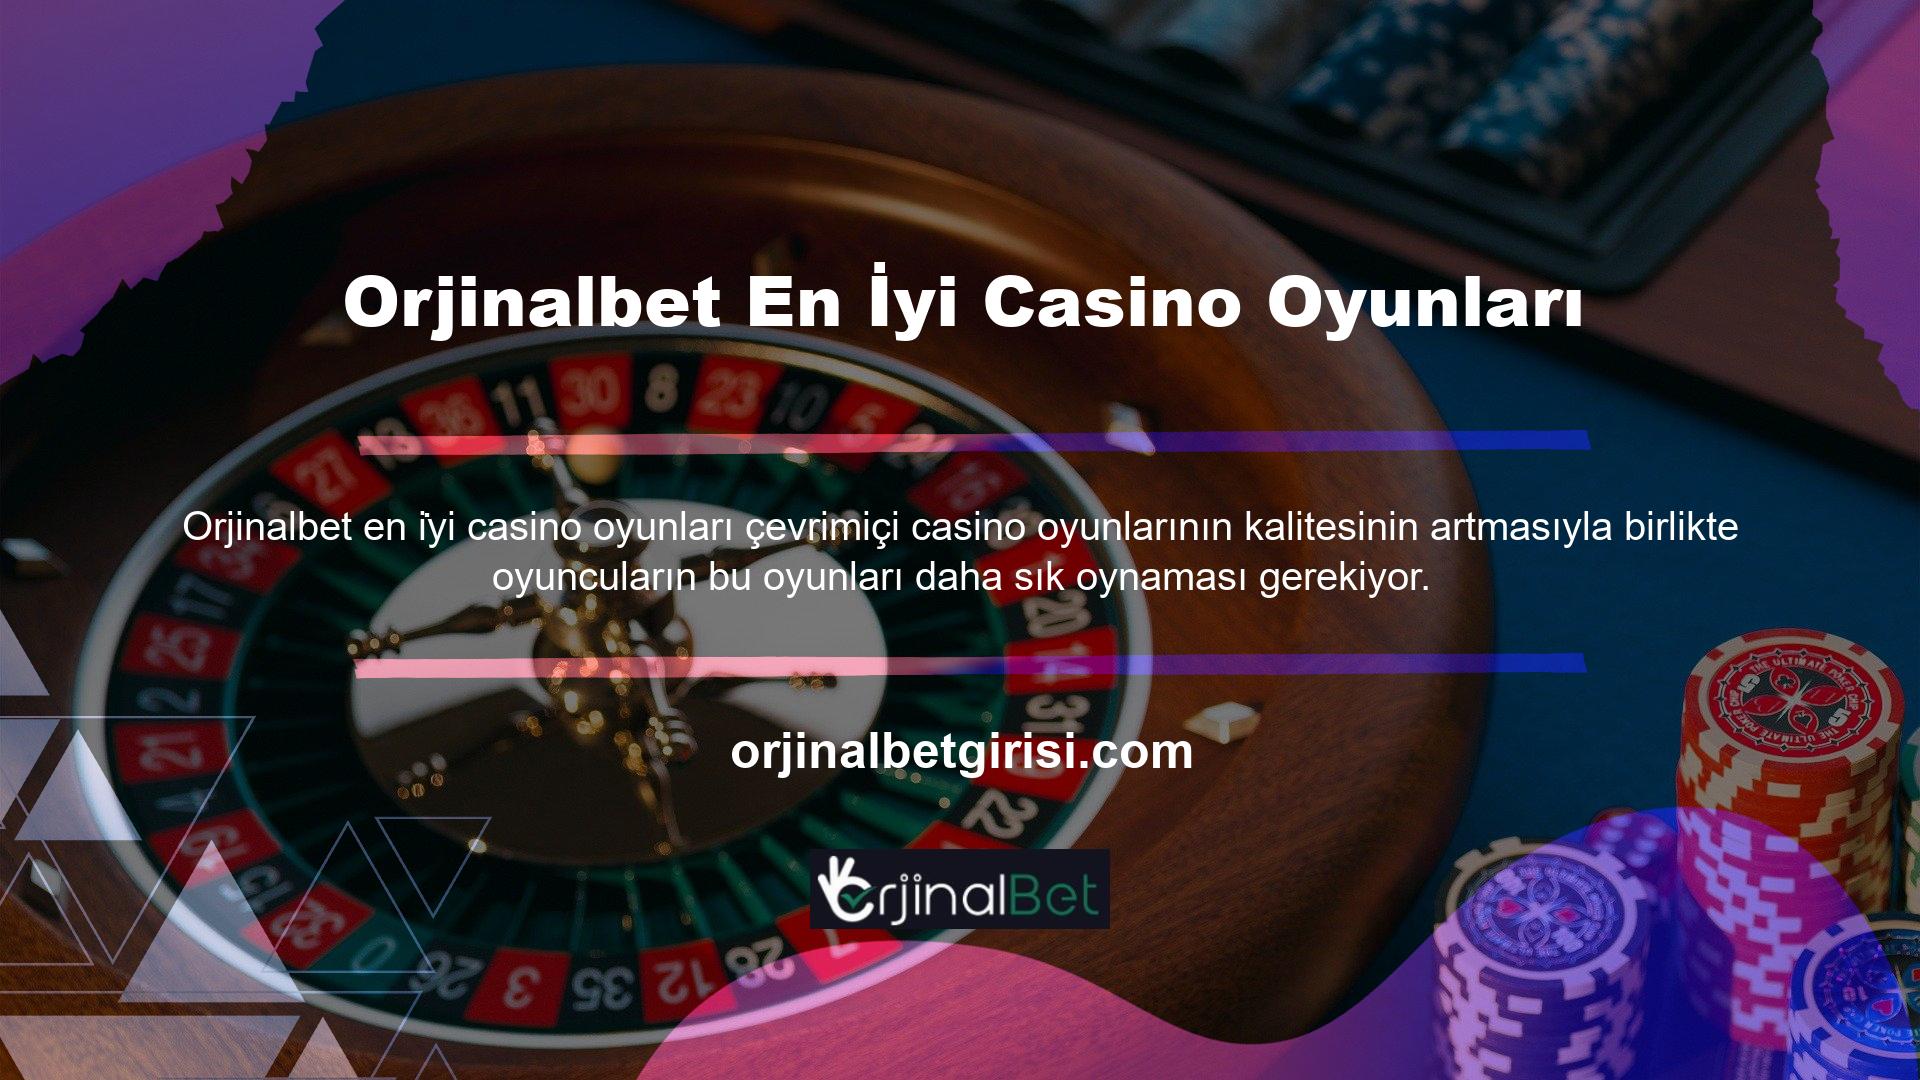 Orjinalbet web sitesinde, farklı bölümlere ayrılmış çeşitli türde casino oyunları bulunmaktadır